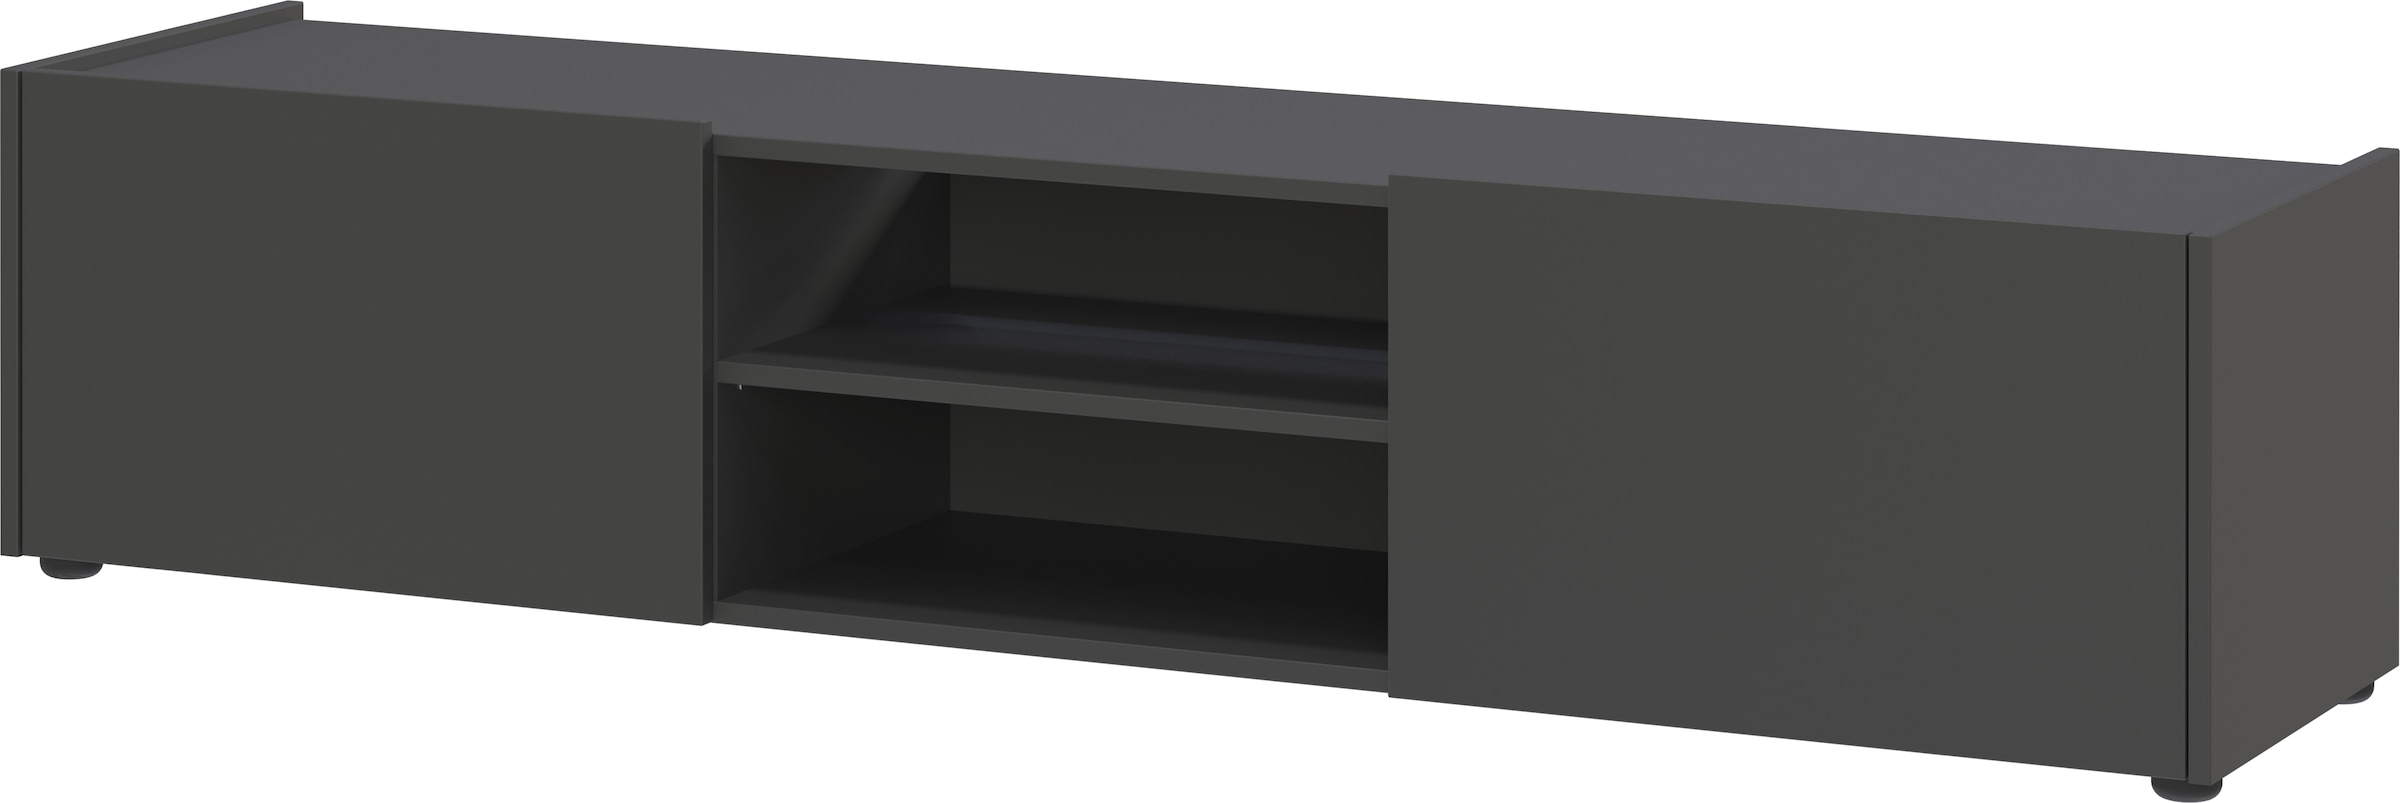 Lowboard, TV-Lowboard mit 2 offenen Fächern und 2 Klappen